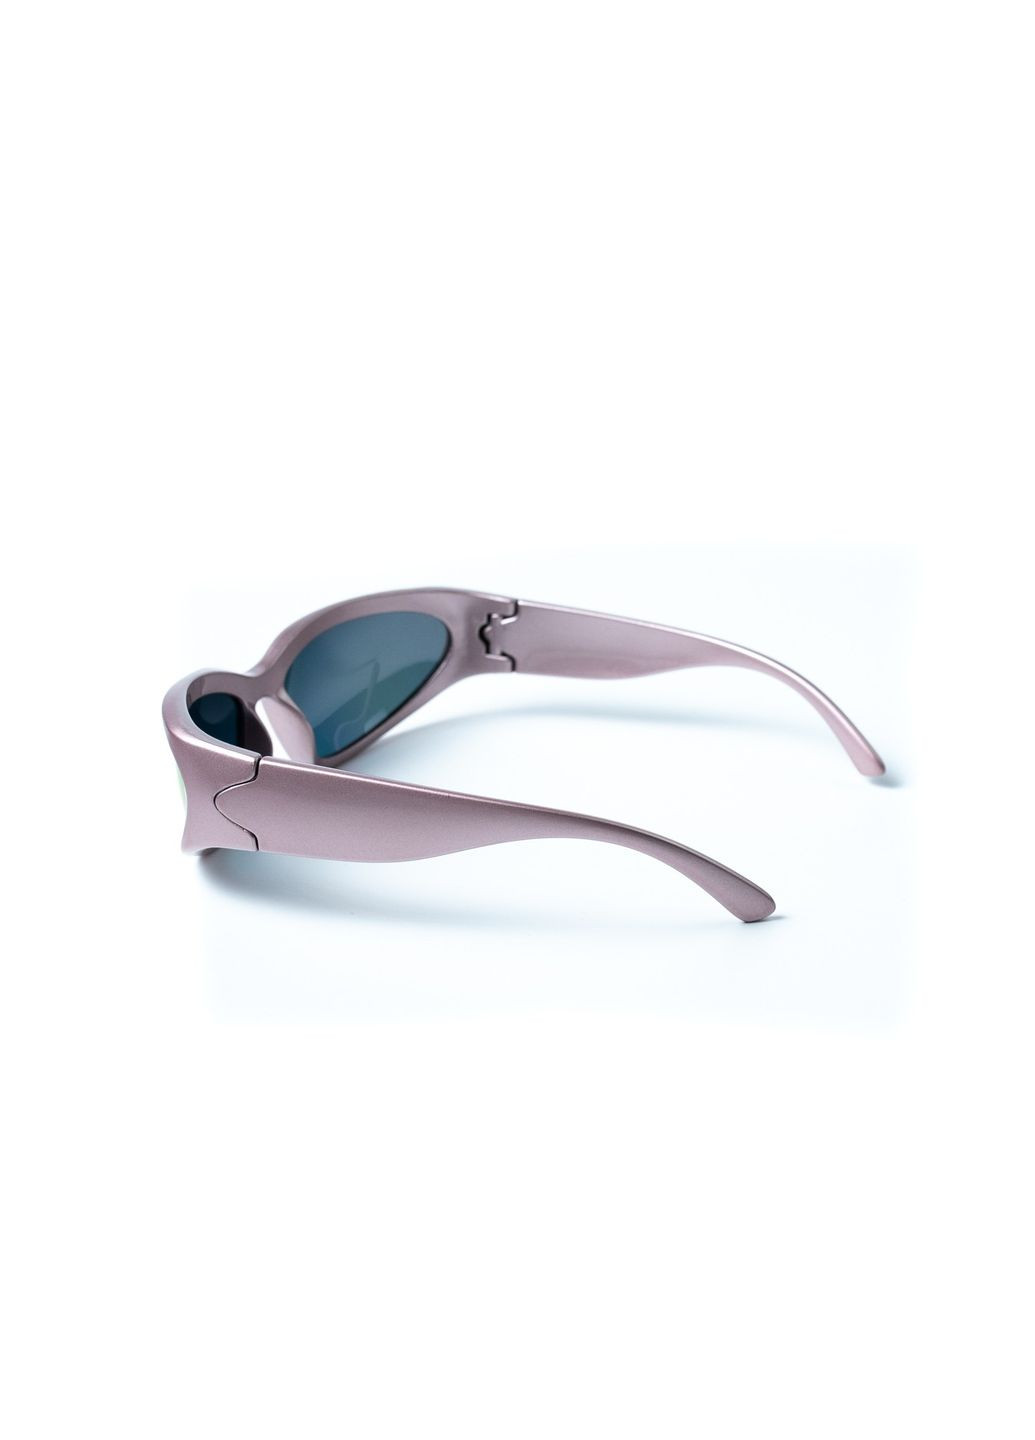 Солнцезащитные очки с поляризацией Спорт женские LuckyLOOK 445-413 (292735663)